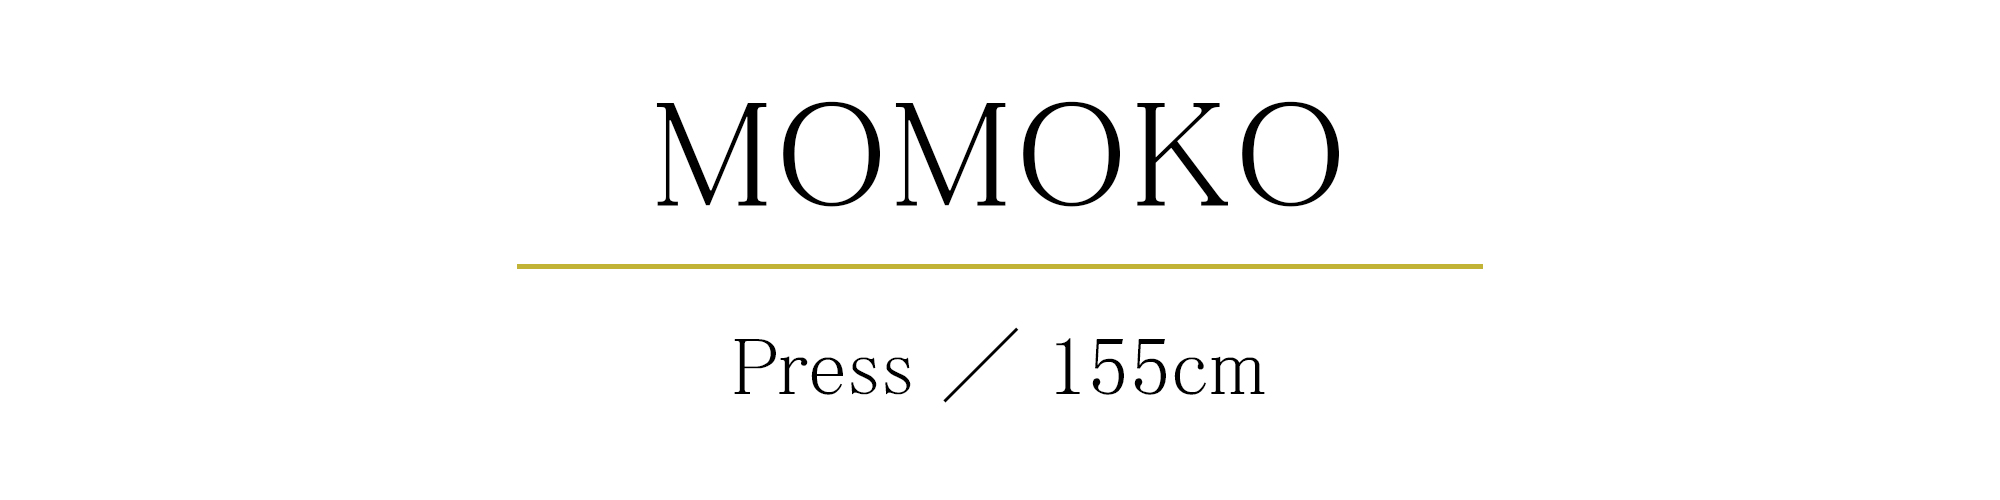 MOMOKO Press 155cm